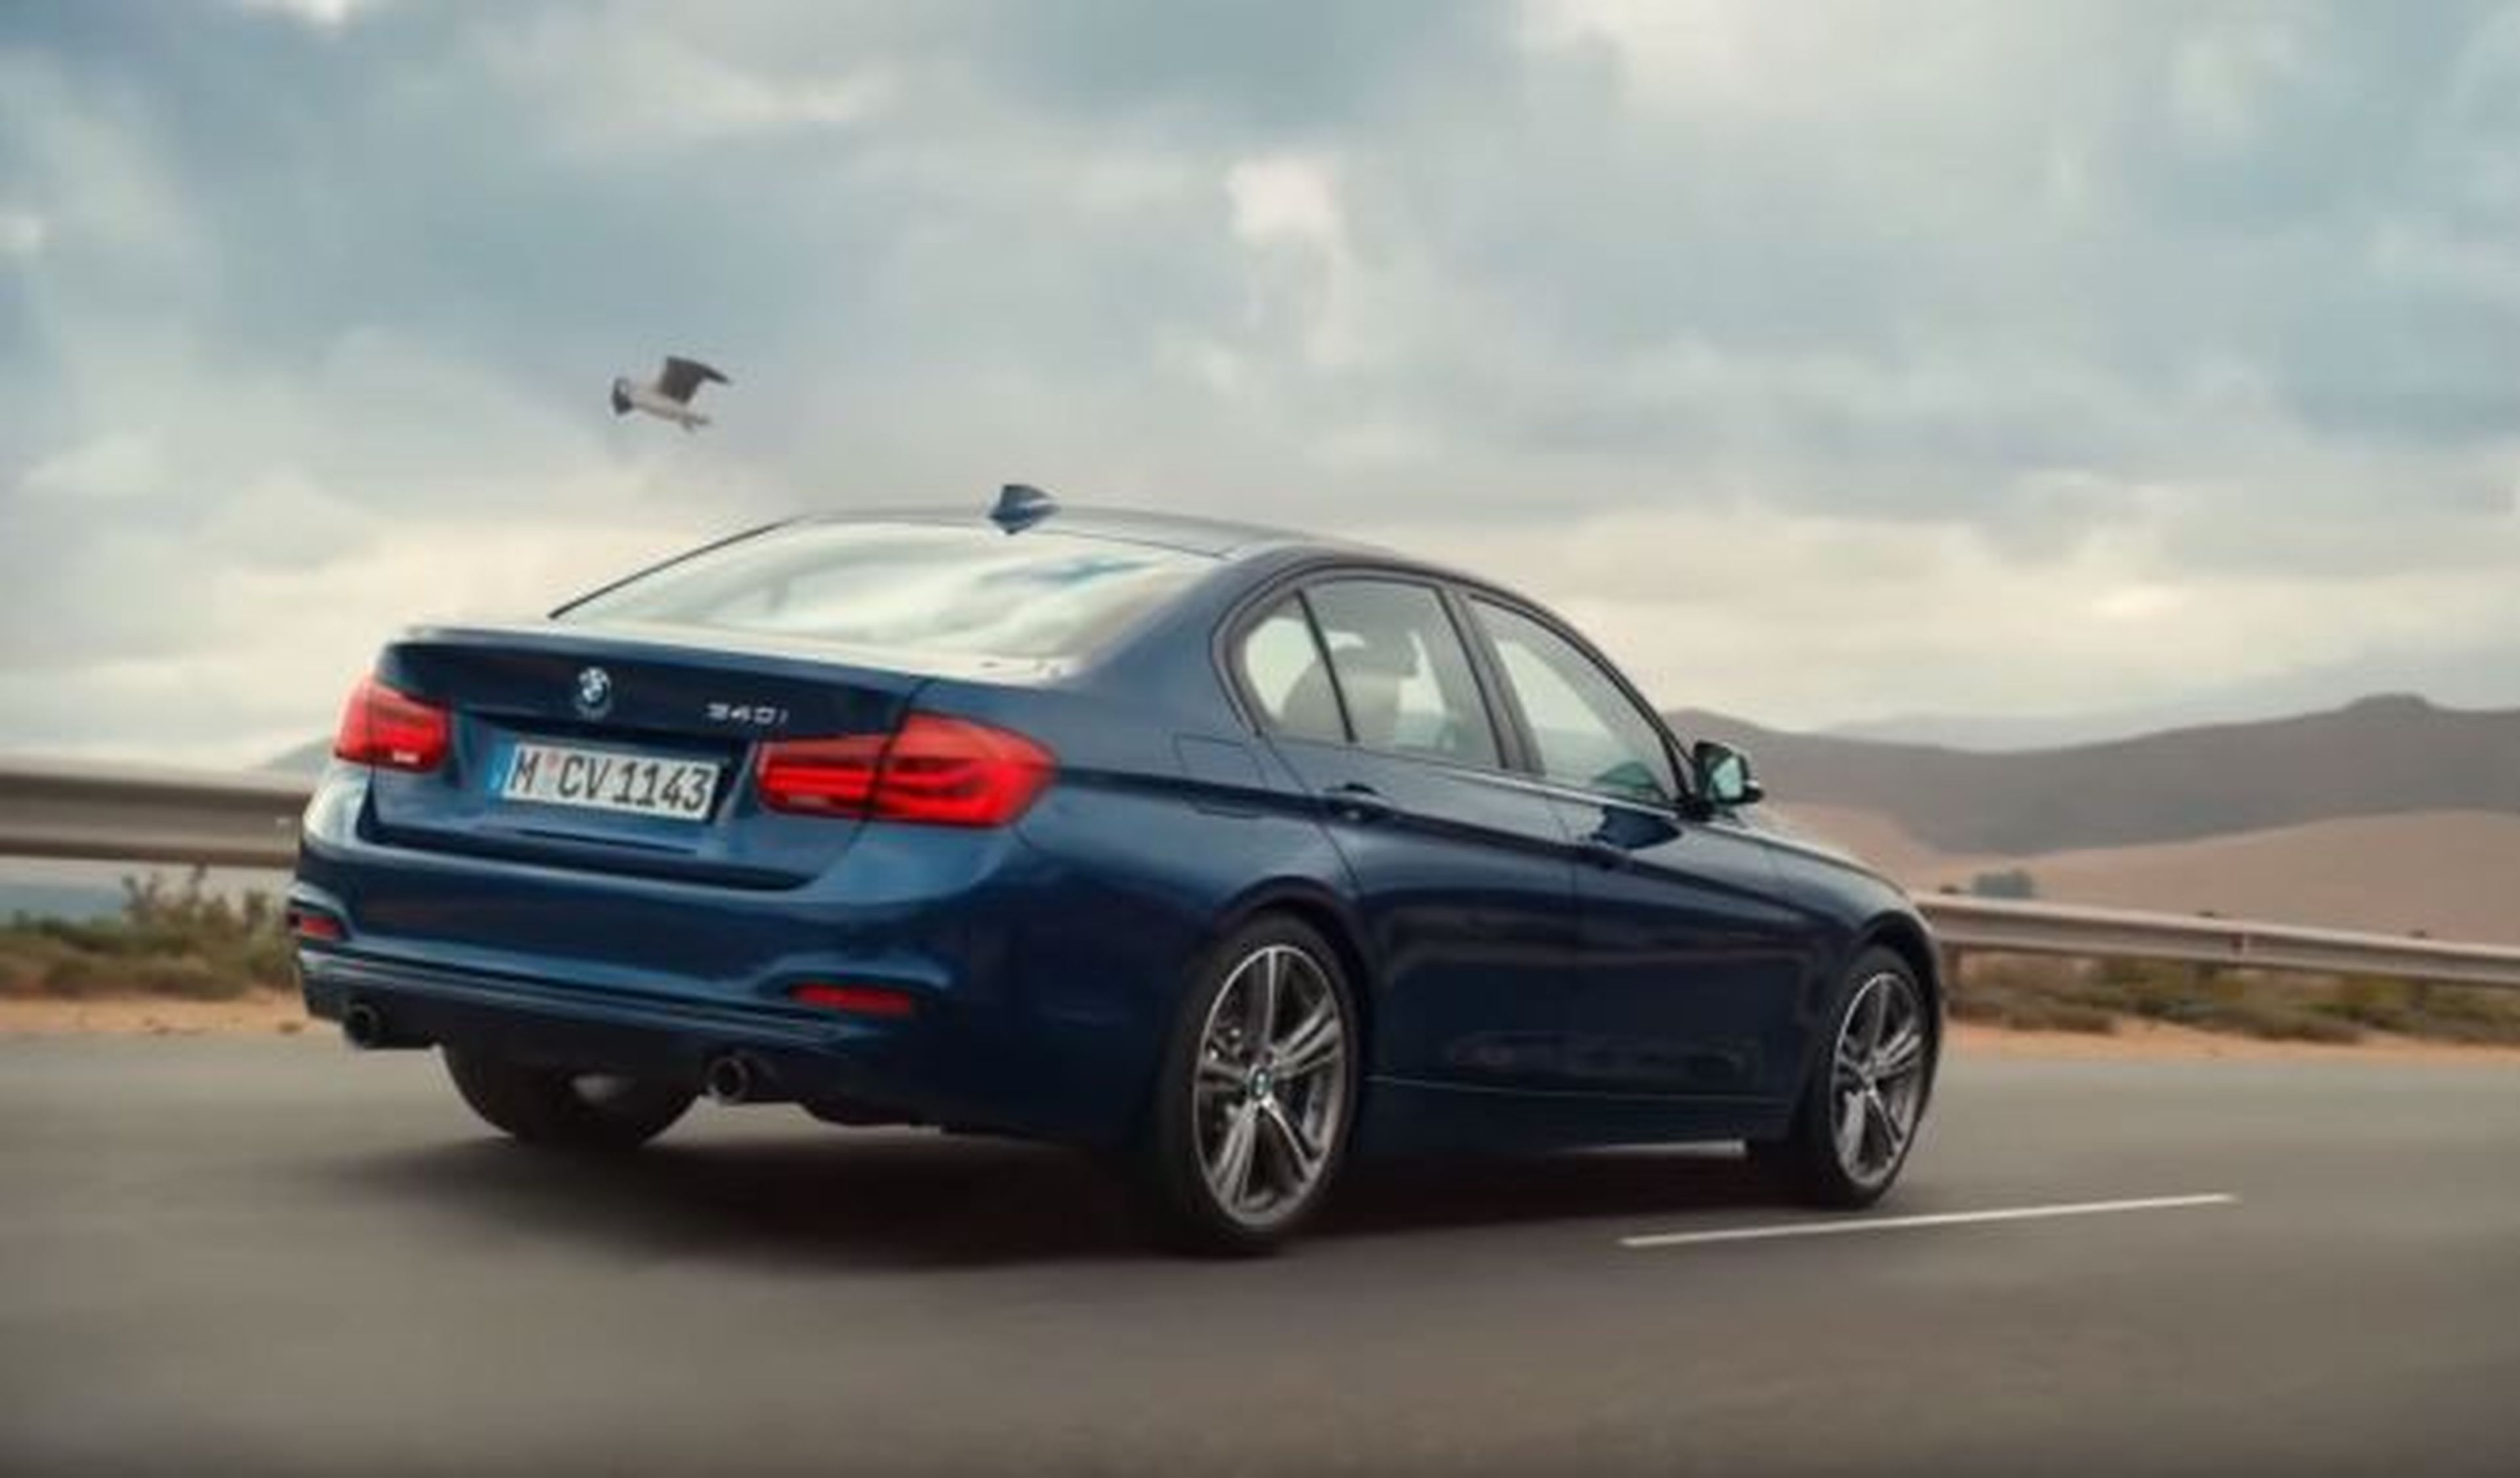 El anuncio de BMW censurado en Reino Unido